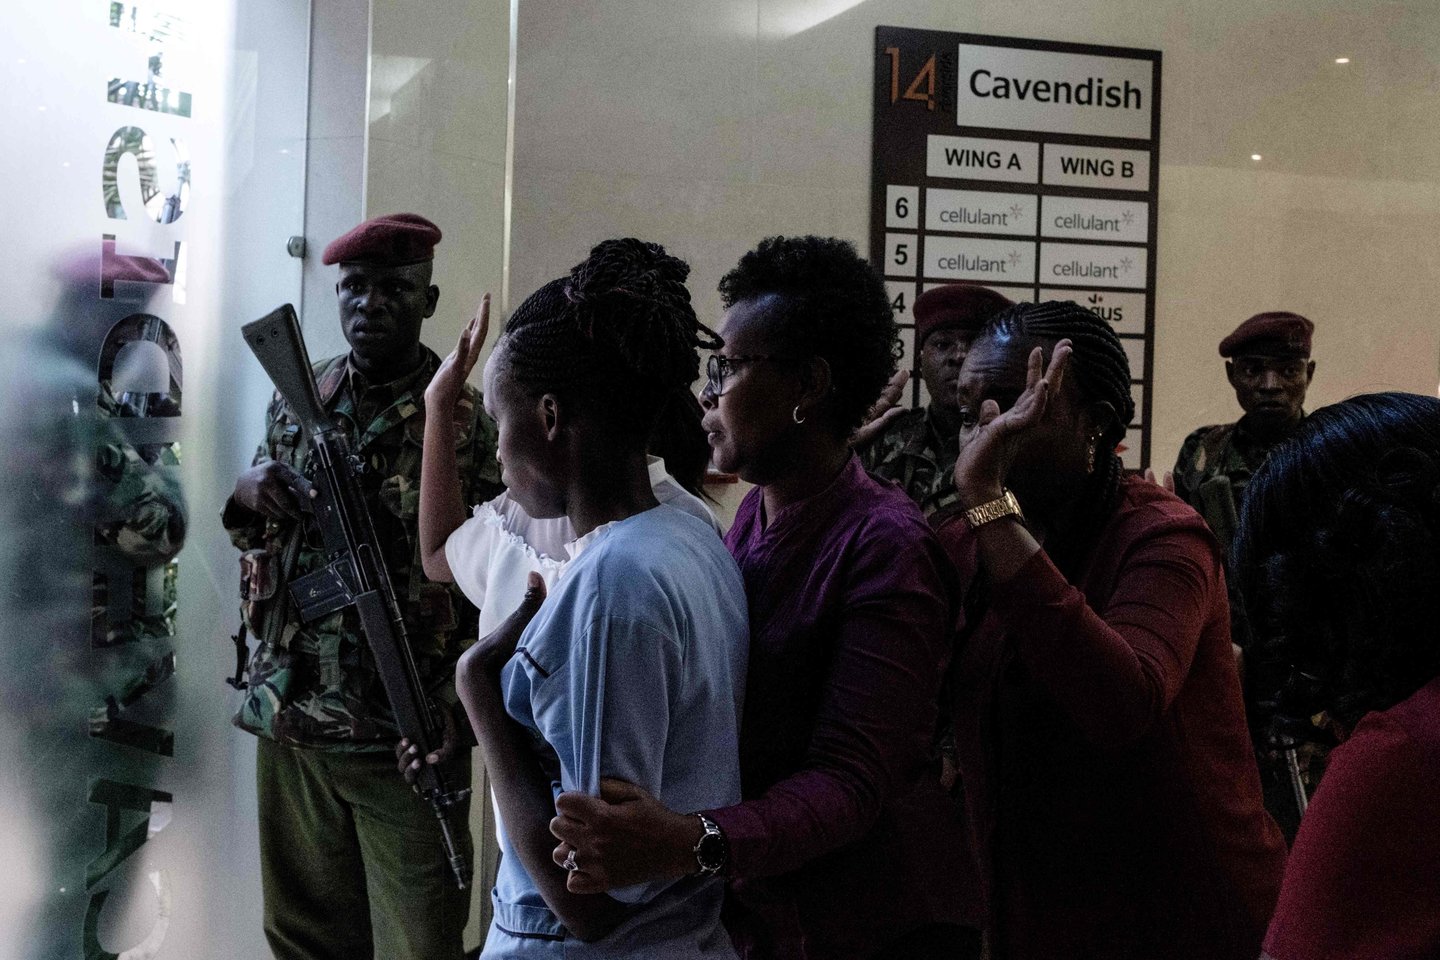  Kenijos sostinėje teroristams antradienį atakavus aukštos klasės viešbučio ir biurų kompleksą, žuvo mažiausiai penki žmonės.<br> AFP/Scanpix nuotr.